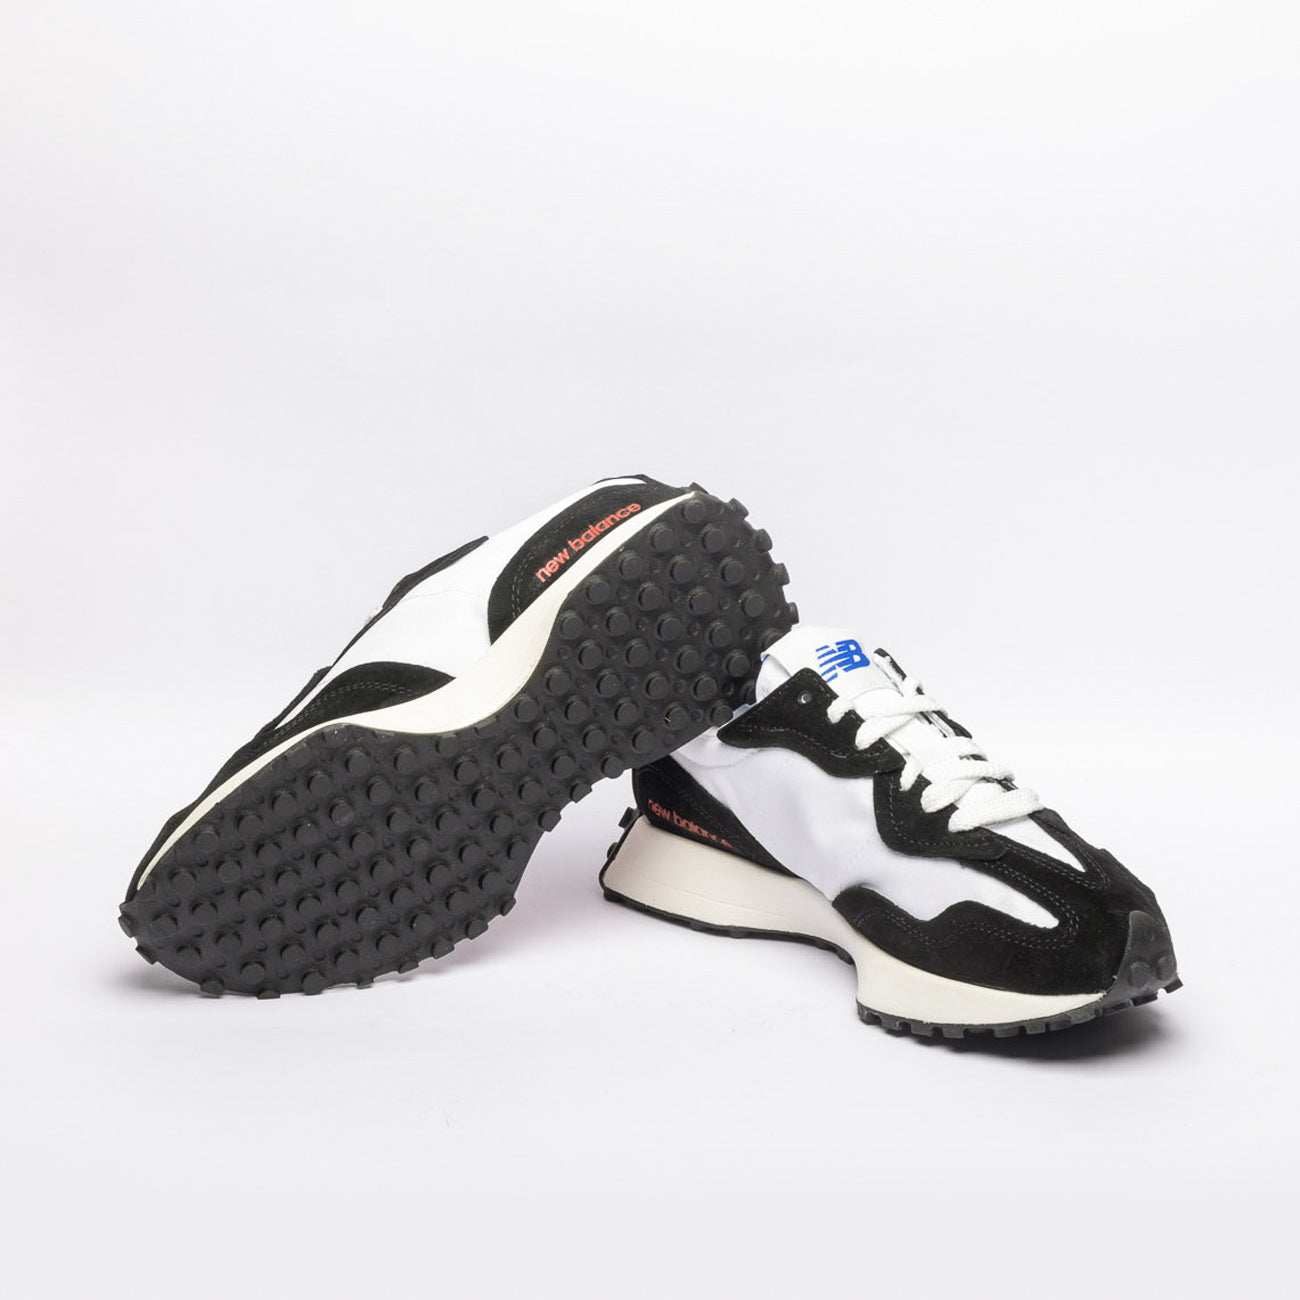 Sneaker New Balance 327 in tessuto bianco e camoscio nero (Taglia 10 US)